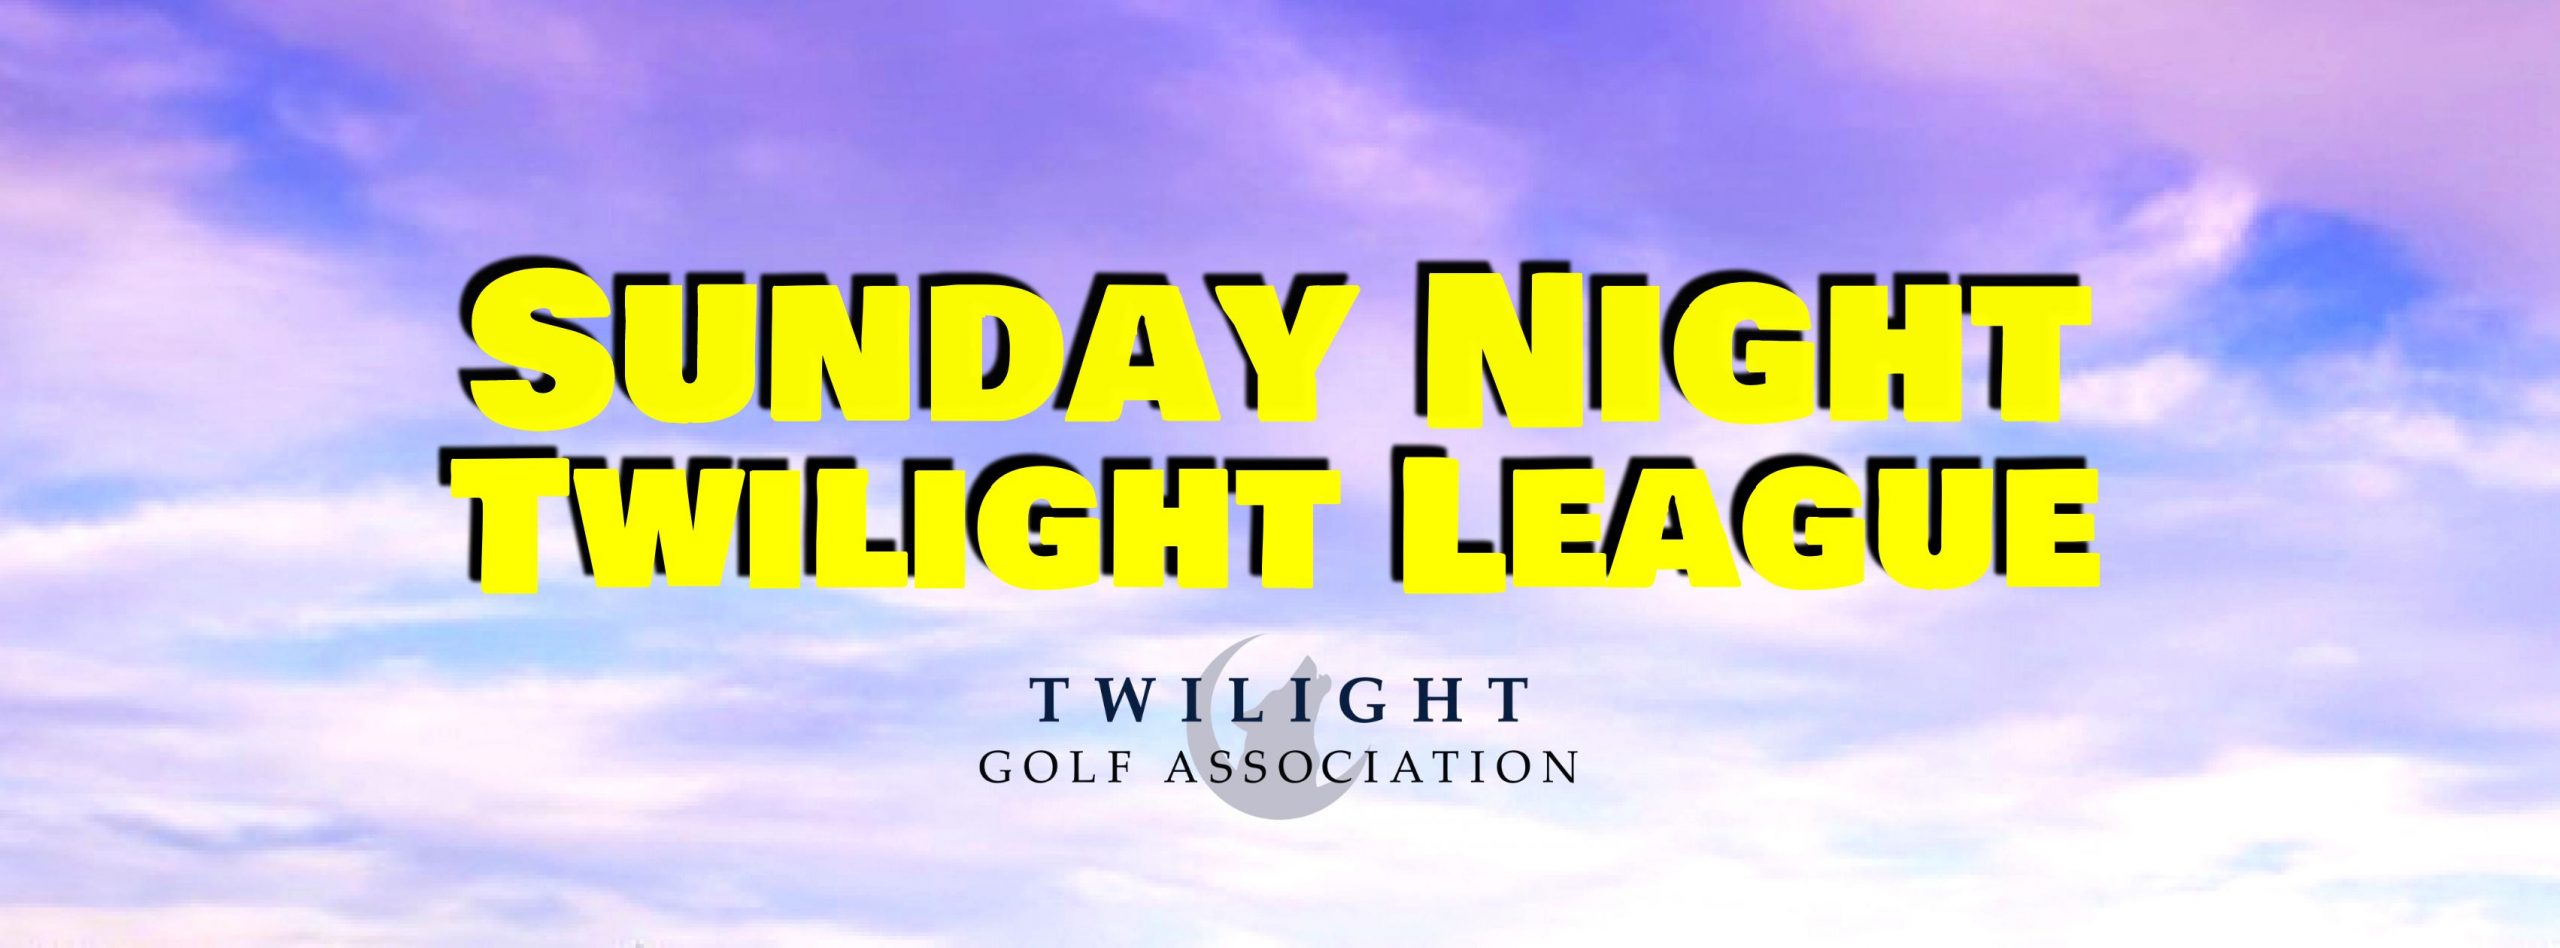 Sunday Twilight League at GCU Golf Course